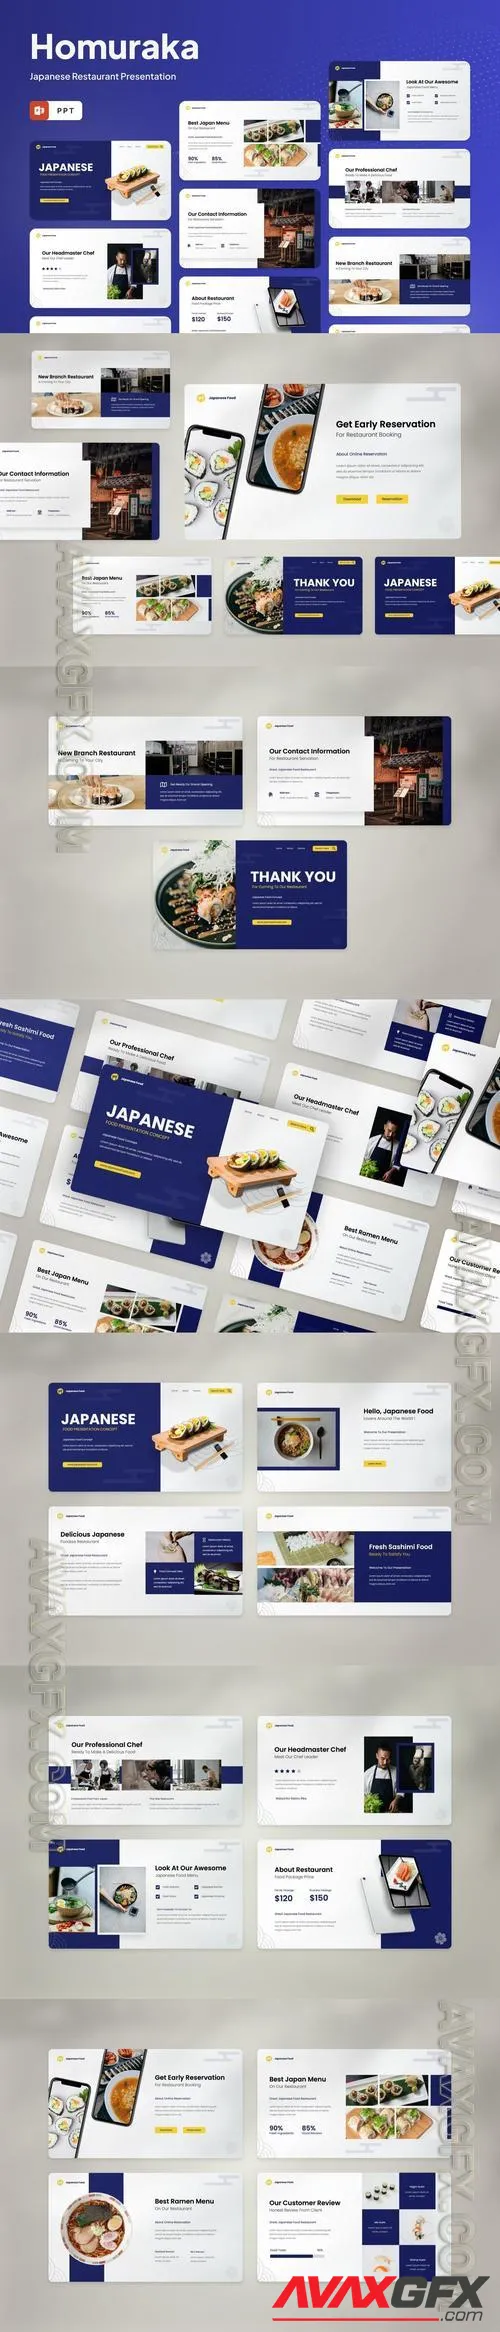 Homuraka Japanese Restaurant PowerPoint Template